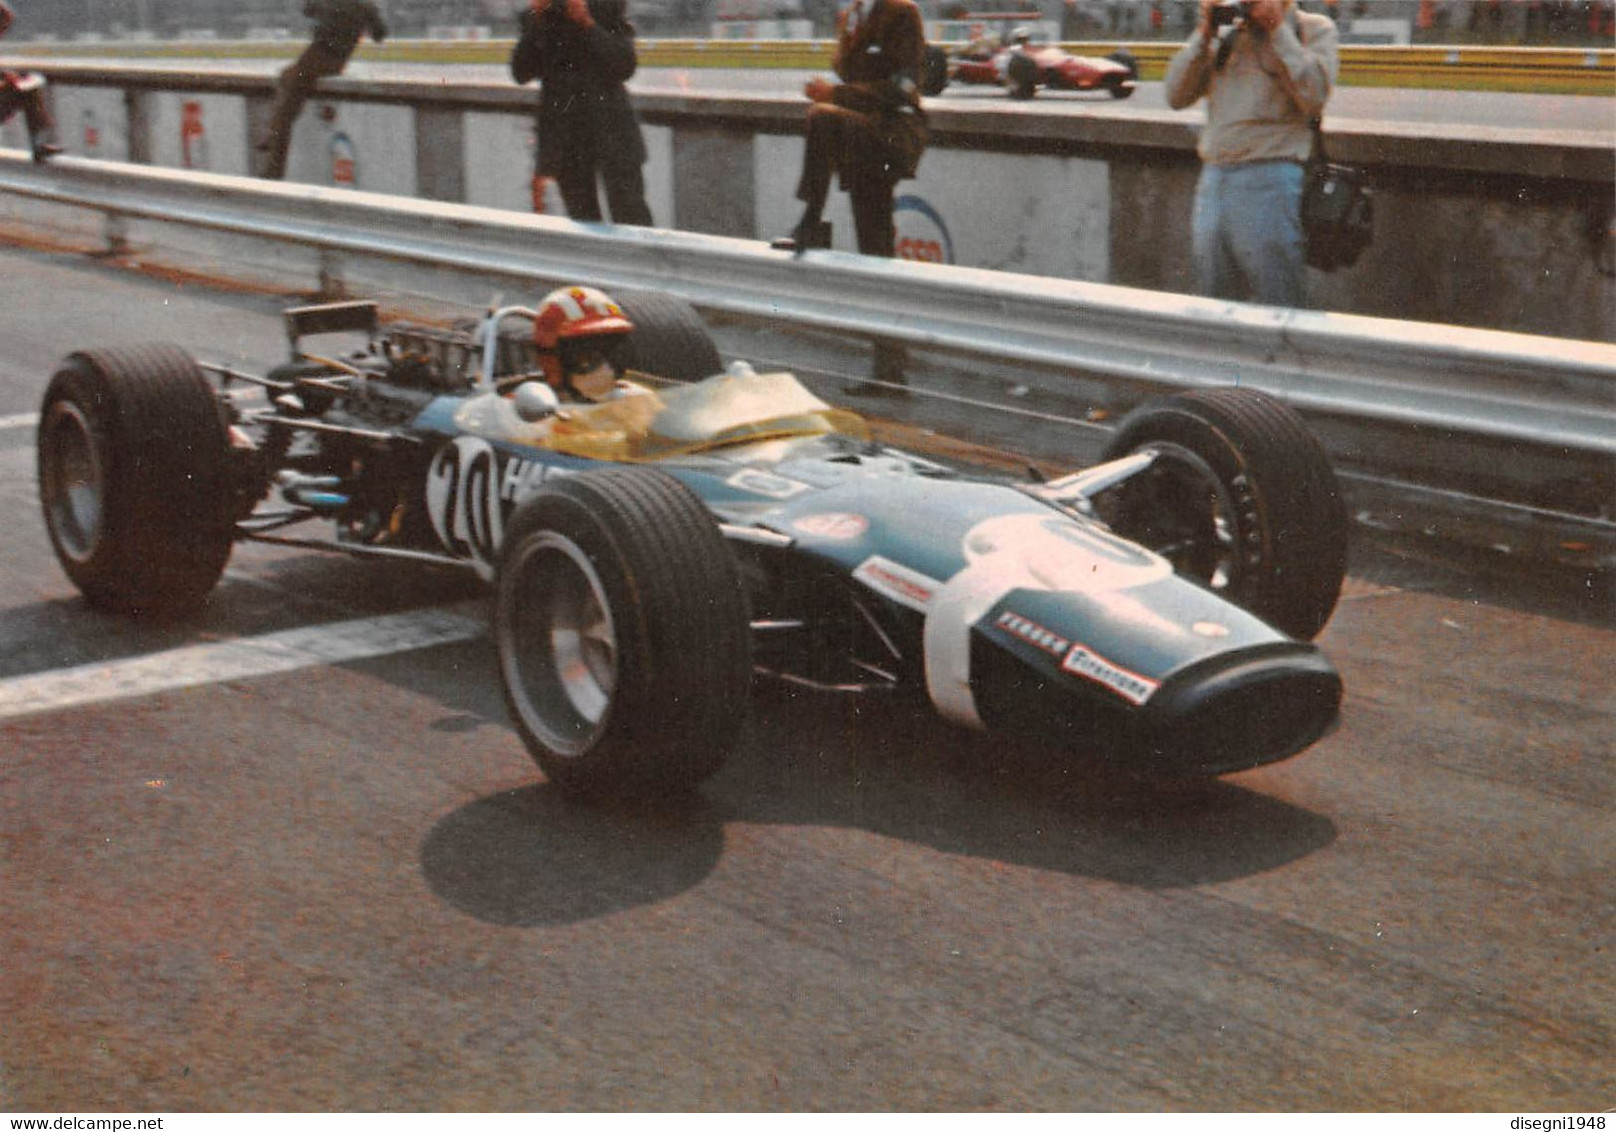 011001 "JOSEPH SIFFERT - LOTUS FORD F. 1 1968 - GRAN PREMIO D'ITALIA 1968 - MONZA" CARTOLINA  ORIG. NON SPED. - Automobilismo - F1